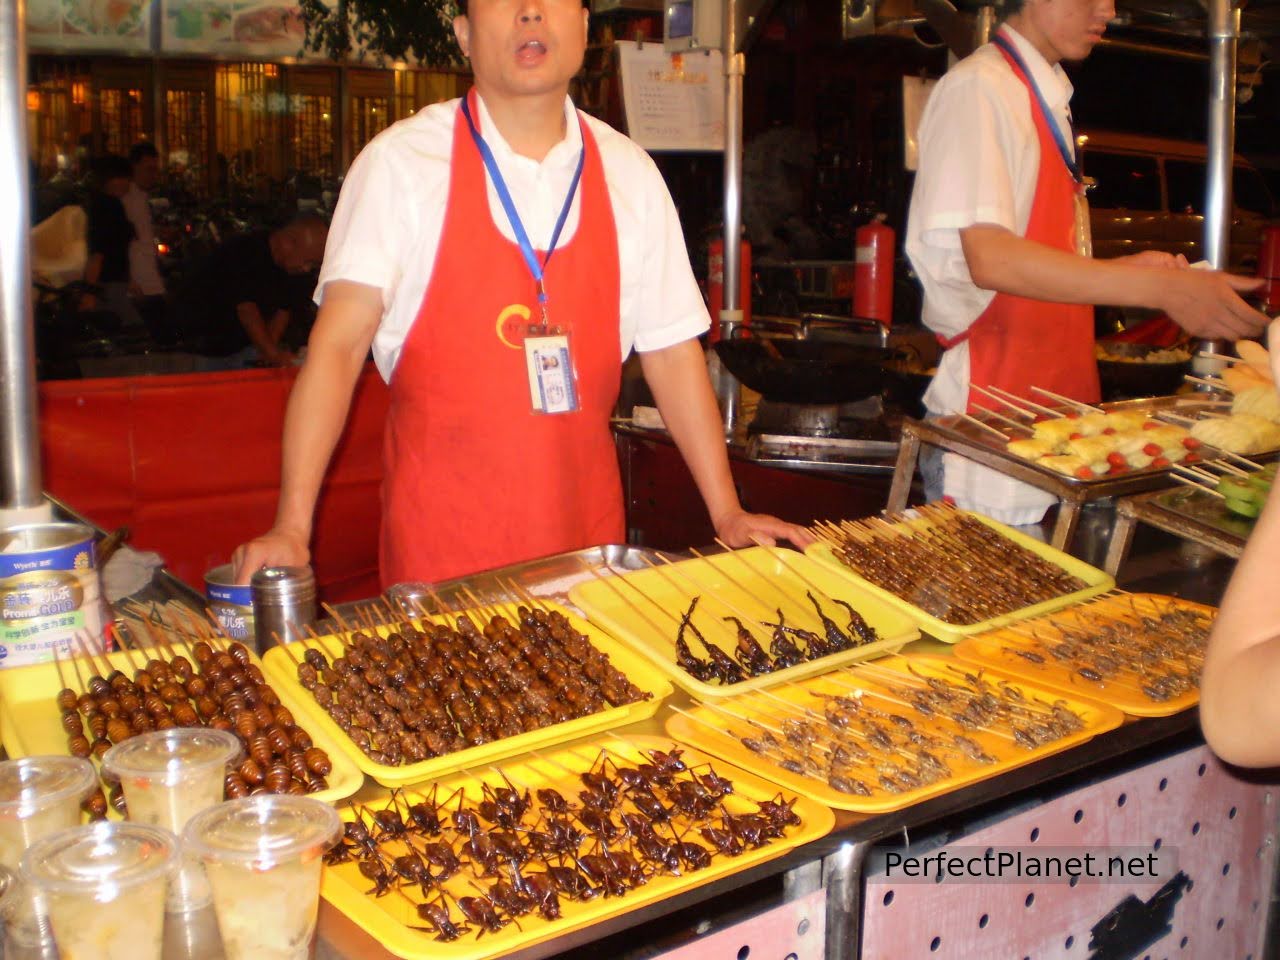 Wangfujing market